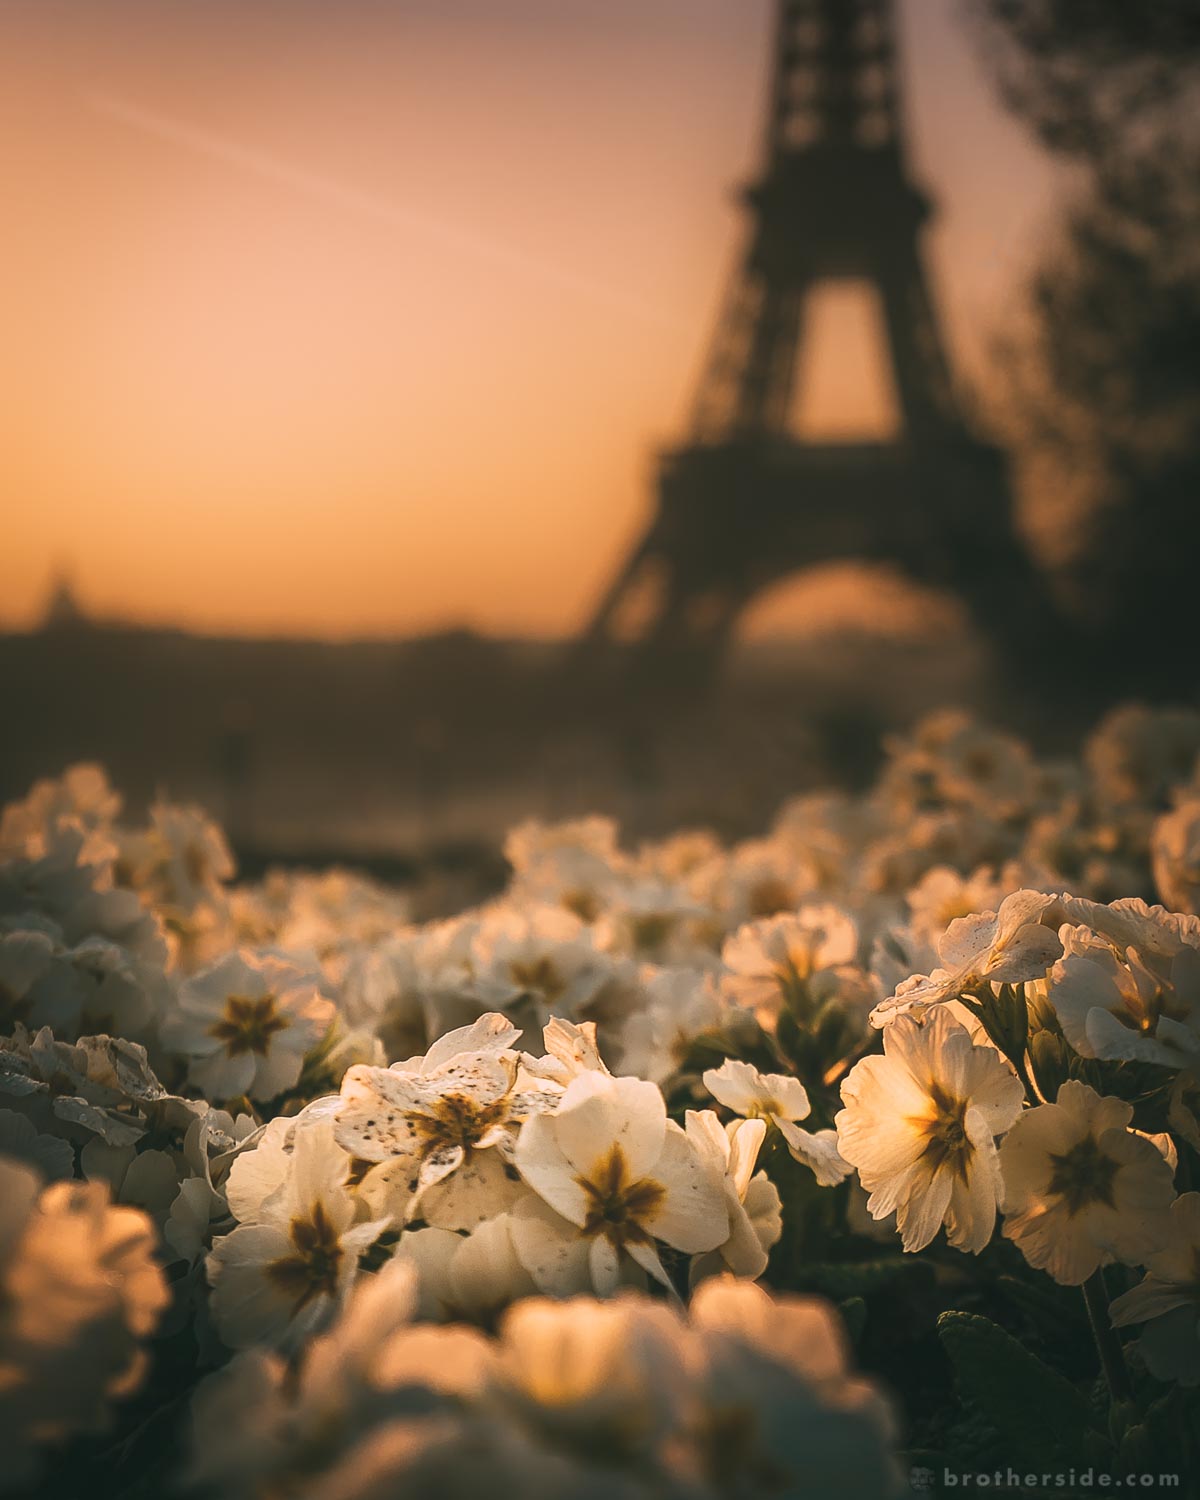 paris #travel #paris #parisaesthetic #aesthetic #sunrise #sunset #beautiful  #tea #mirror #book